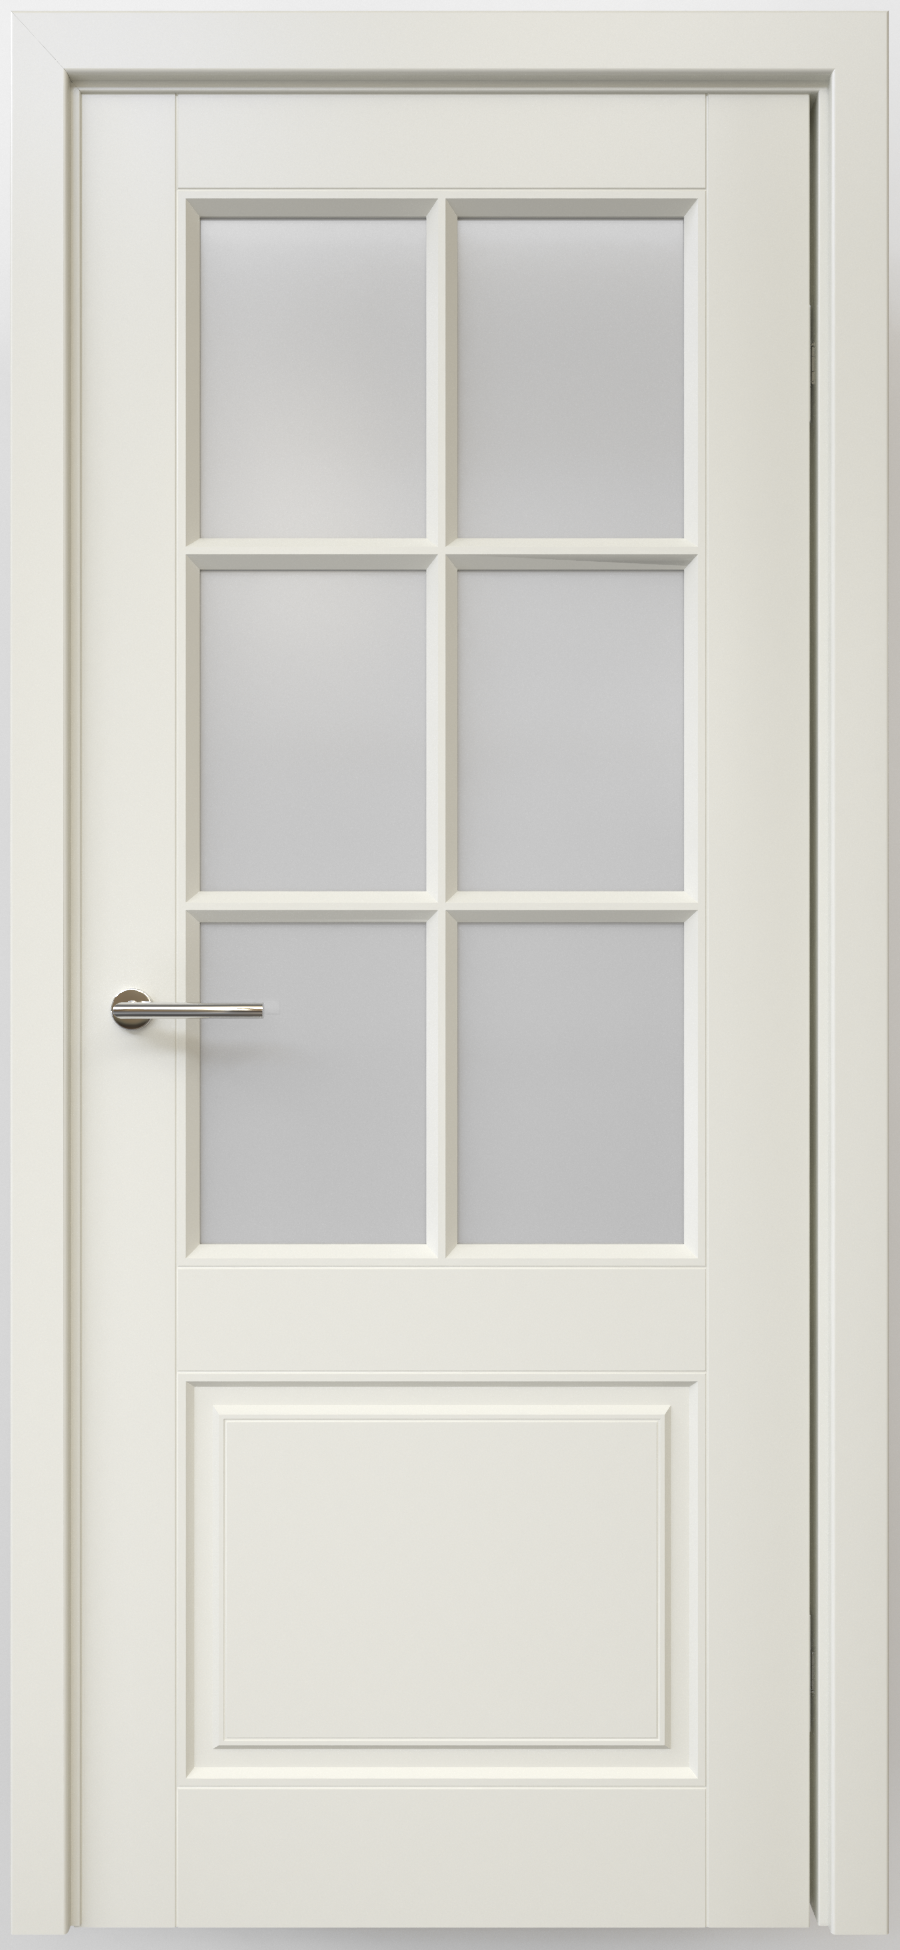 Полотно дверное остекленное Эмаль Классика-4 ПРАВОЕ 900 латте стекло мателюкс (защелка маг.)